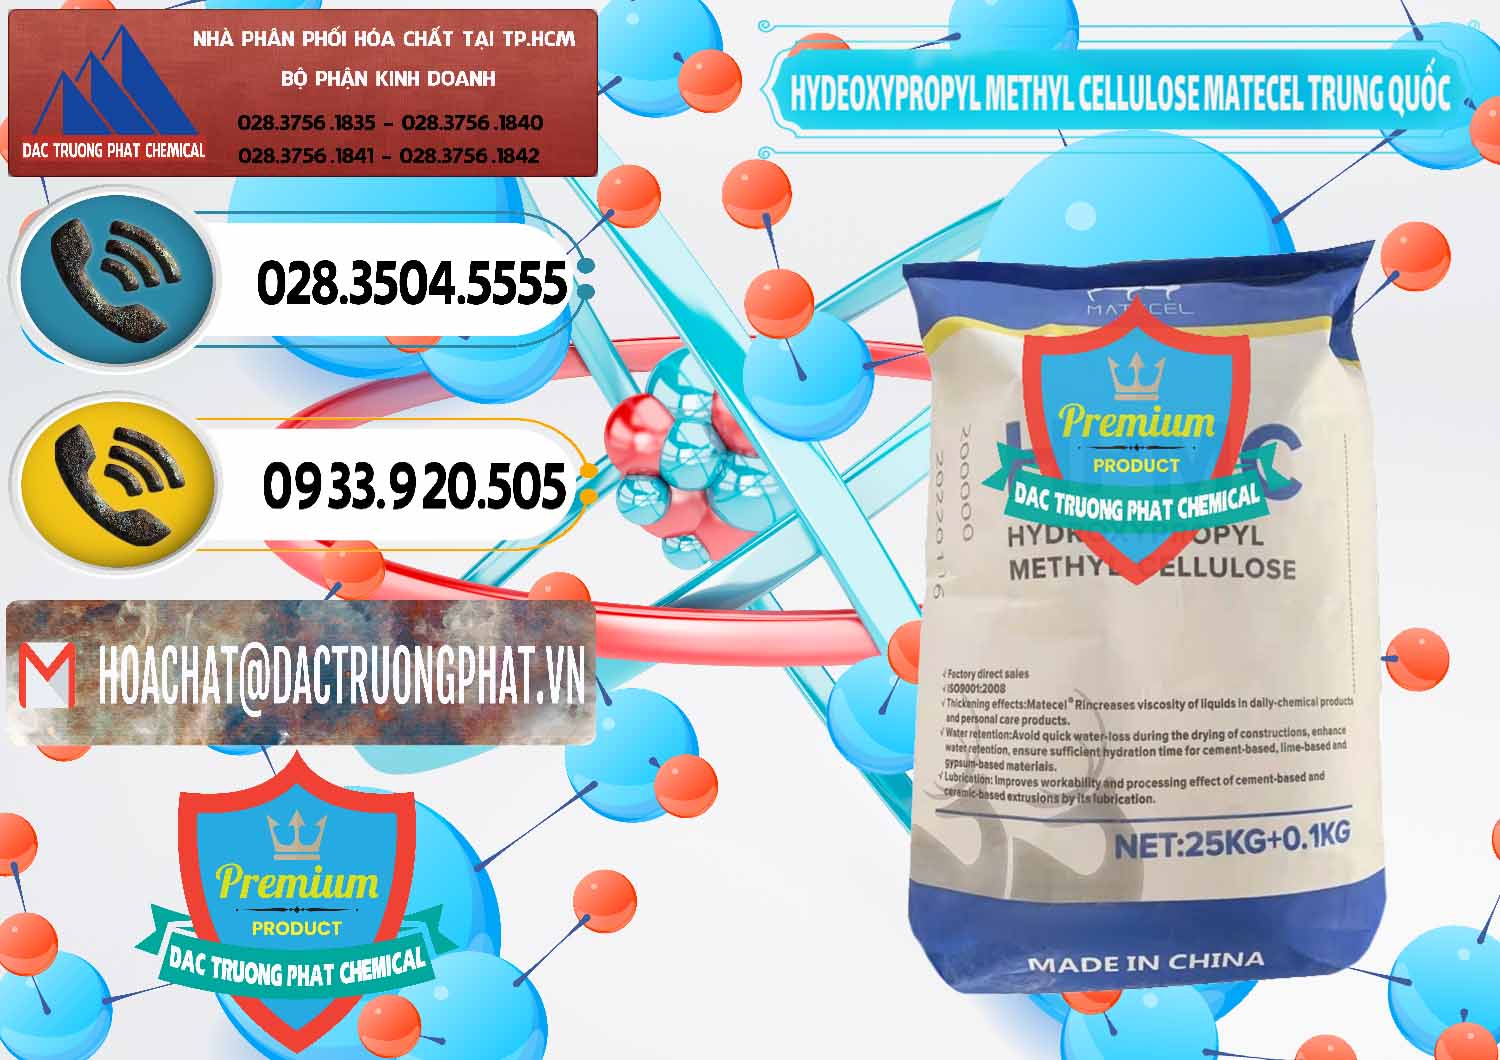 Bán và cung ứng Chất Tạo Đặc HPMC - Hydroxypropyl Methyl Cellulose Matecel Trung Quốc China - 0396 - Cung ứng & phân phối hóa chất tại TP.HCM - hoachatdetnhuom.vn